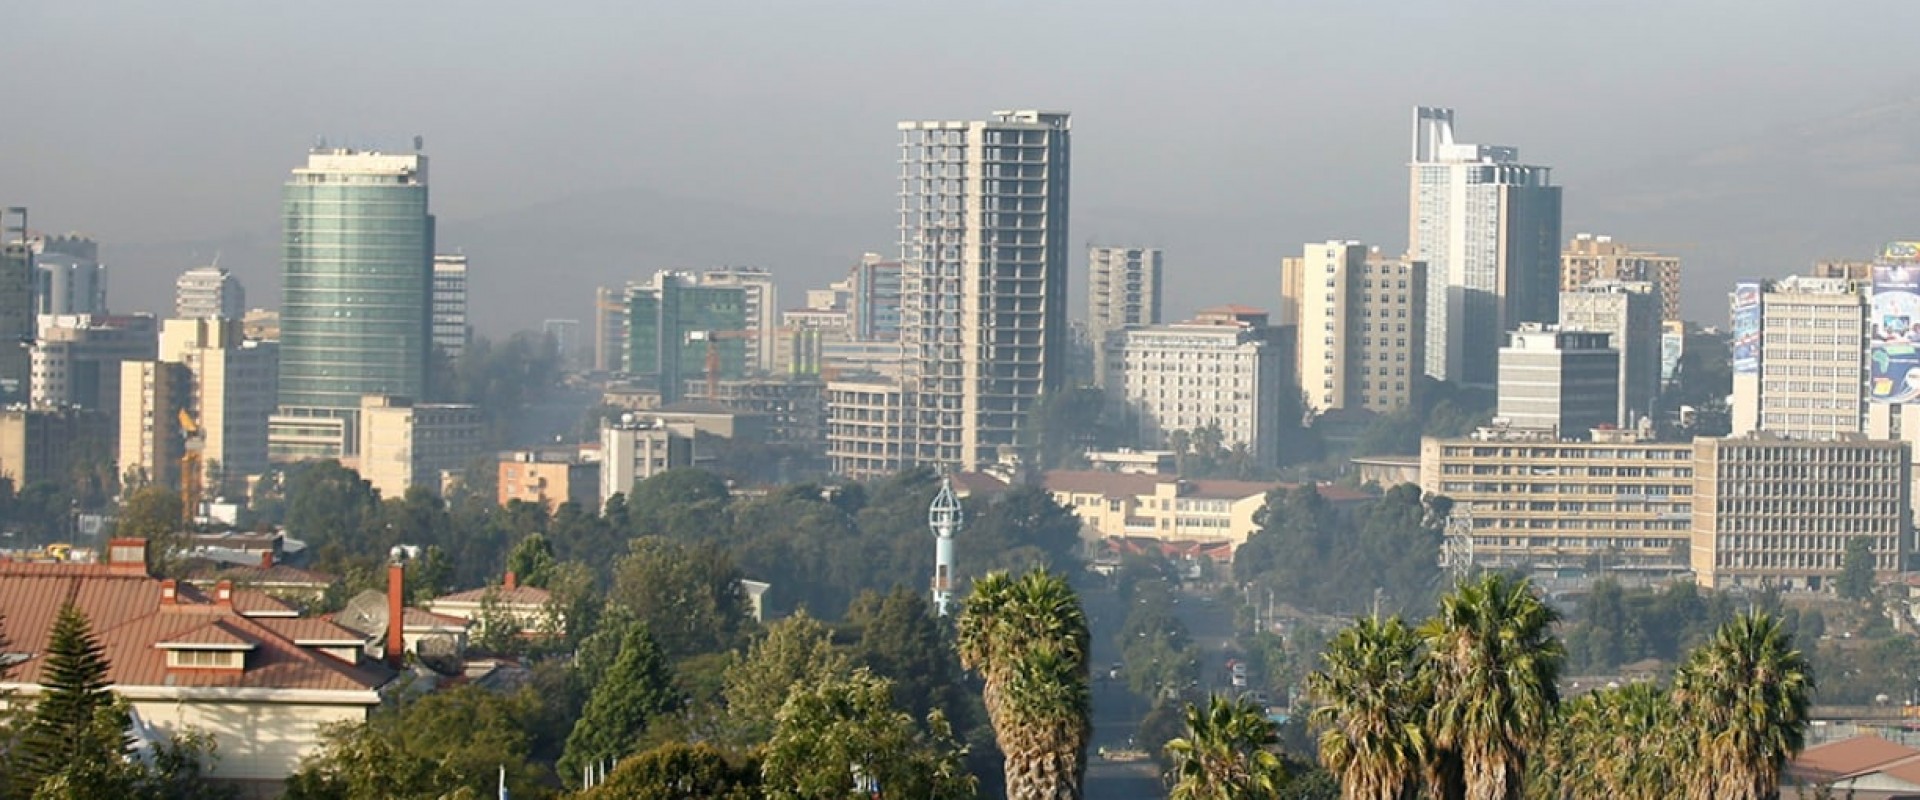 Ethiopie : Les hôtels sous surveillance pour... les relations homosexuelles ?!